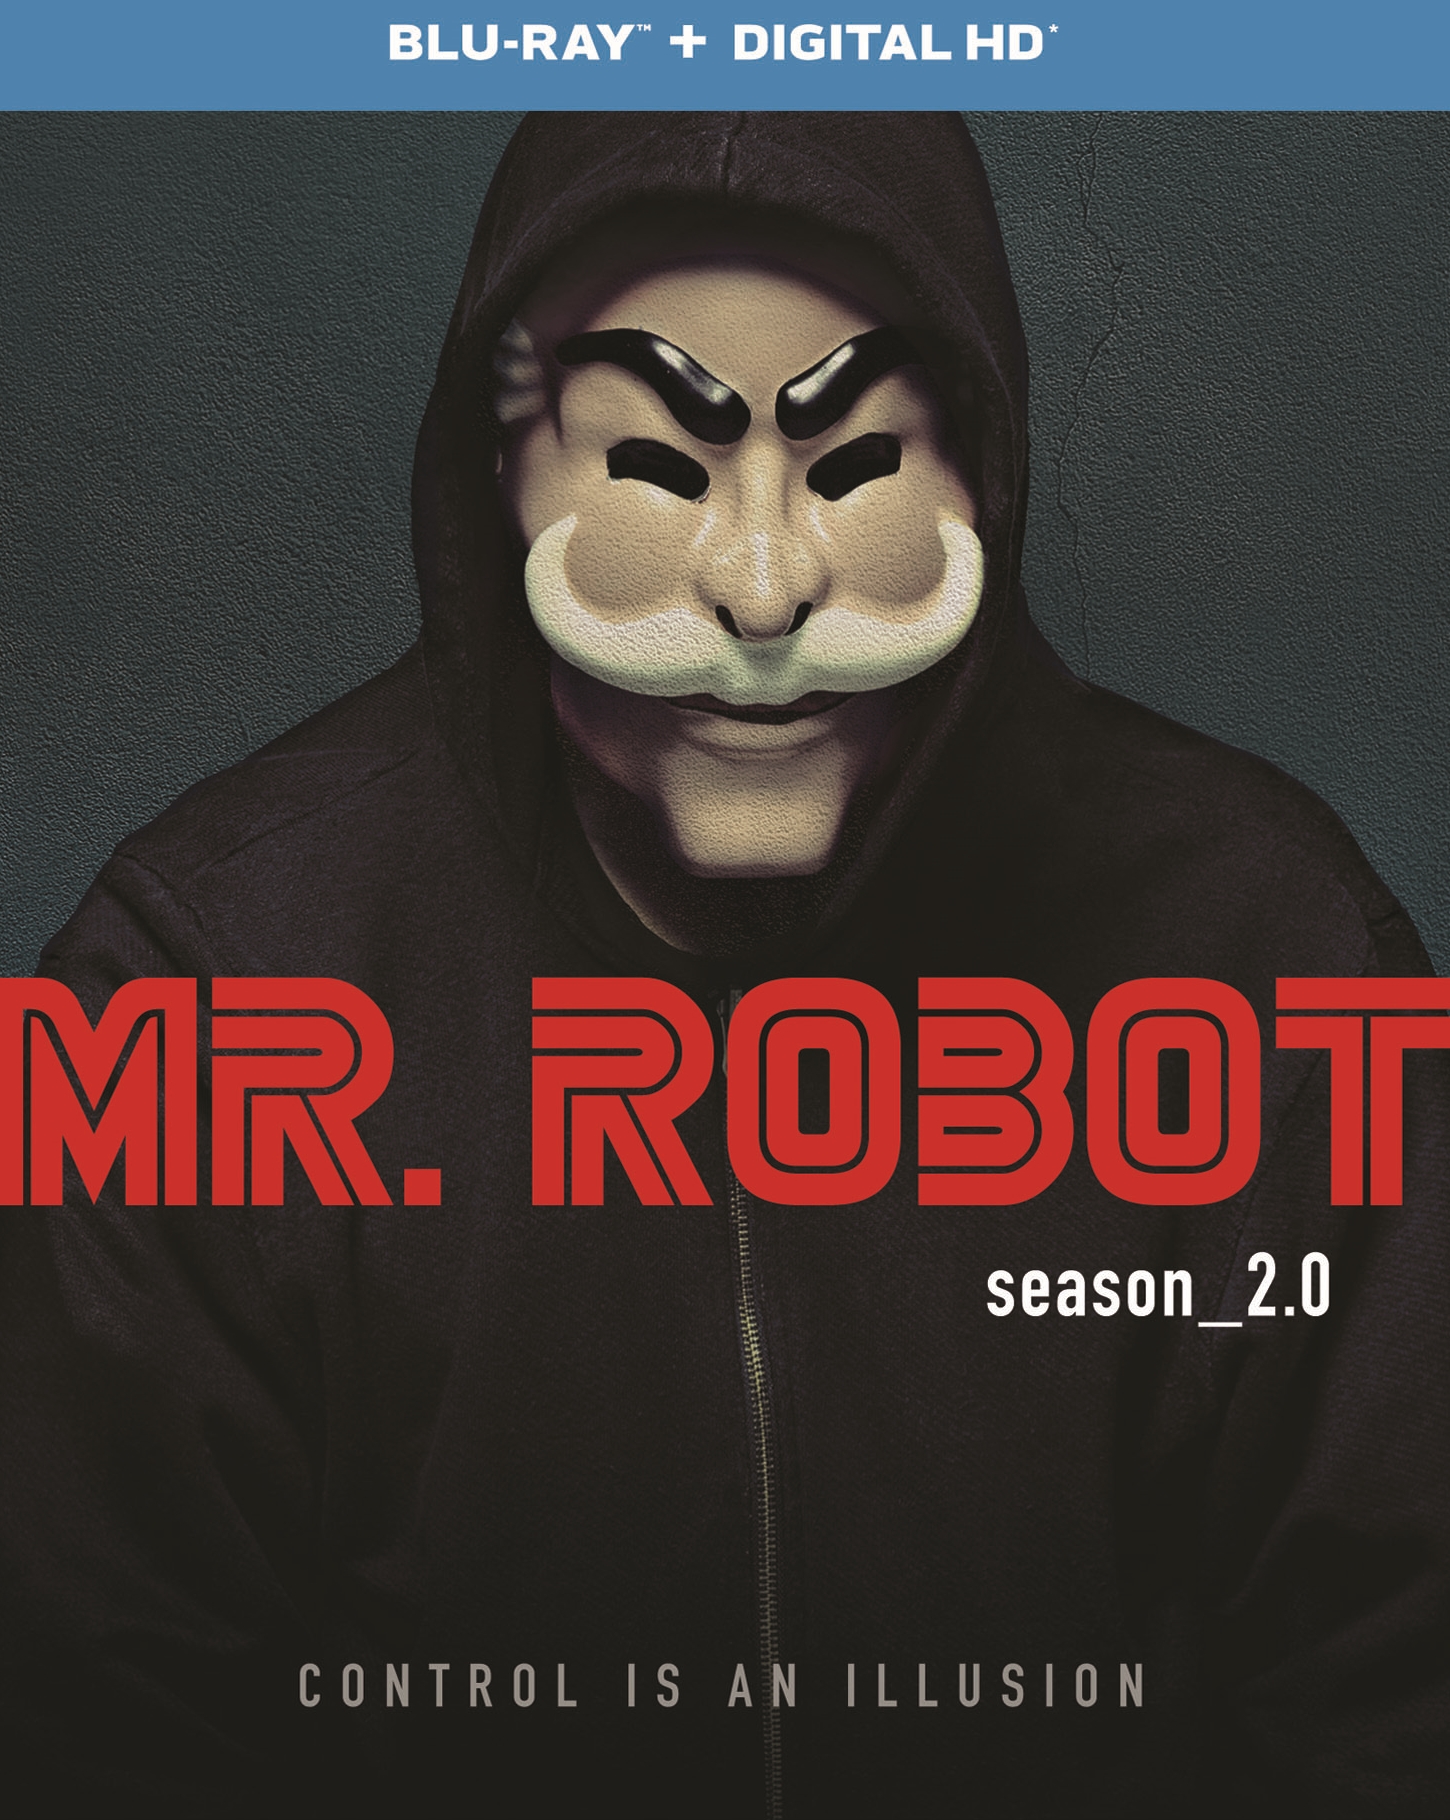 USA renews 'Mr. Robot' for second season